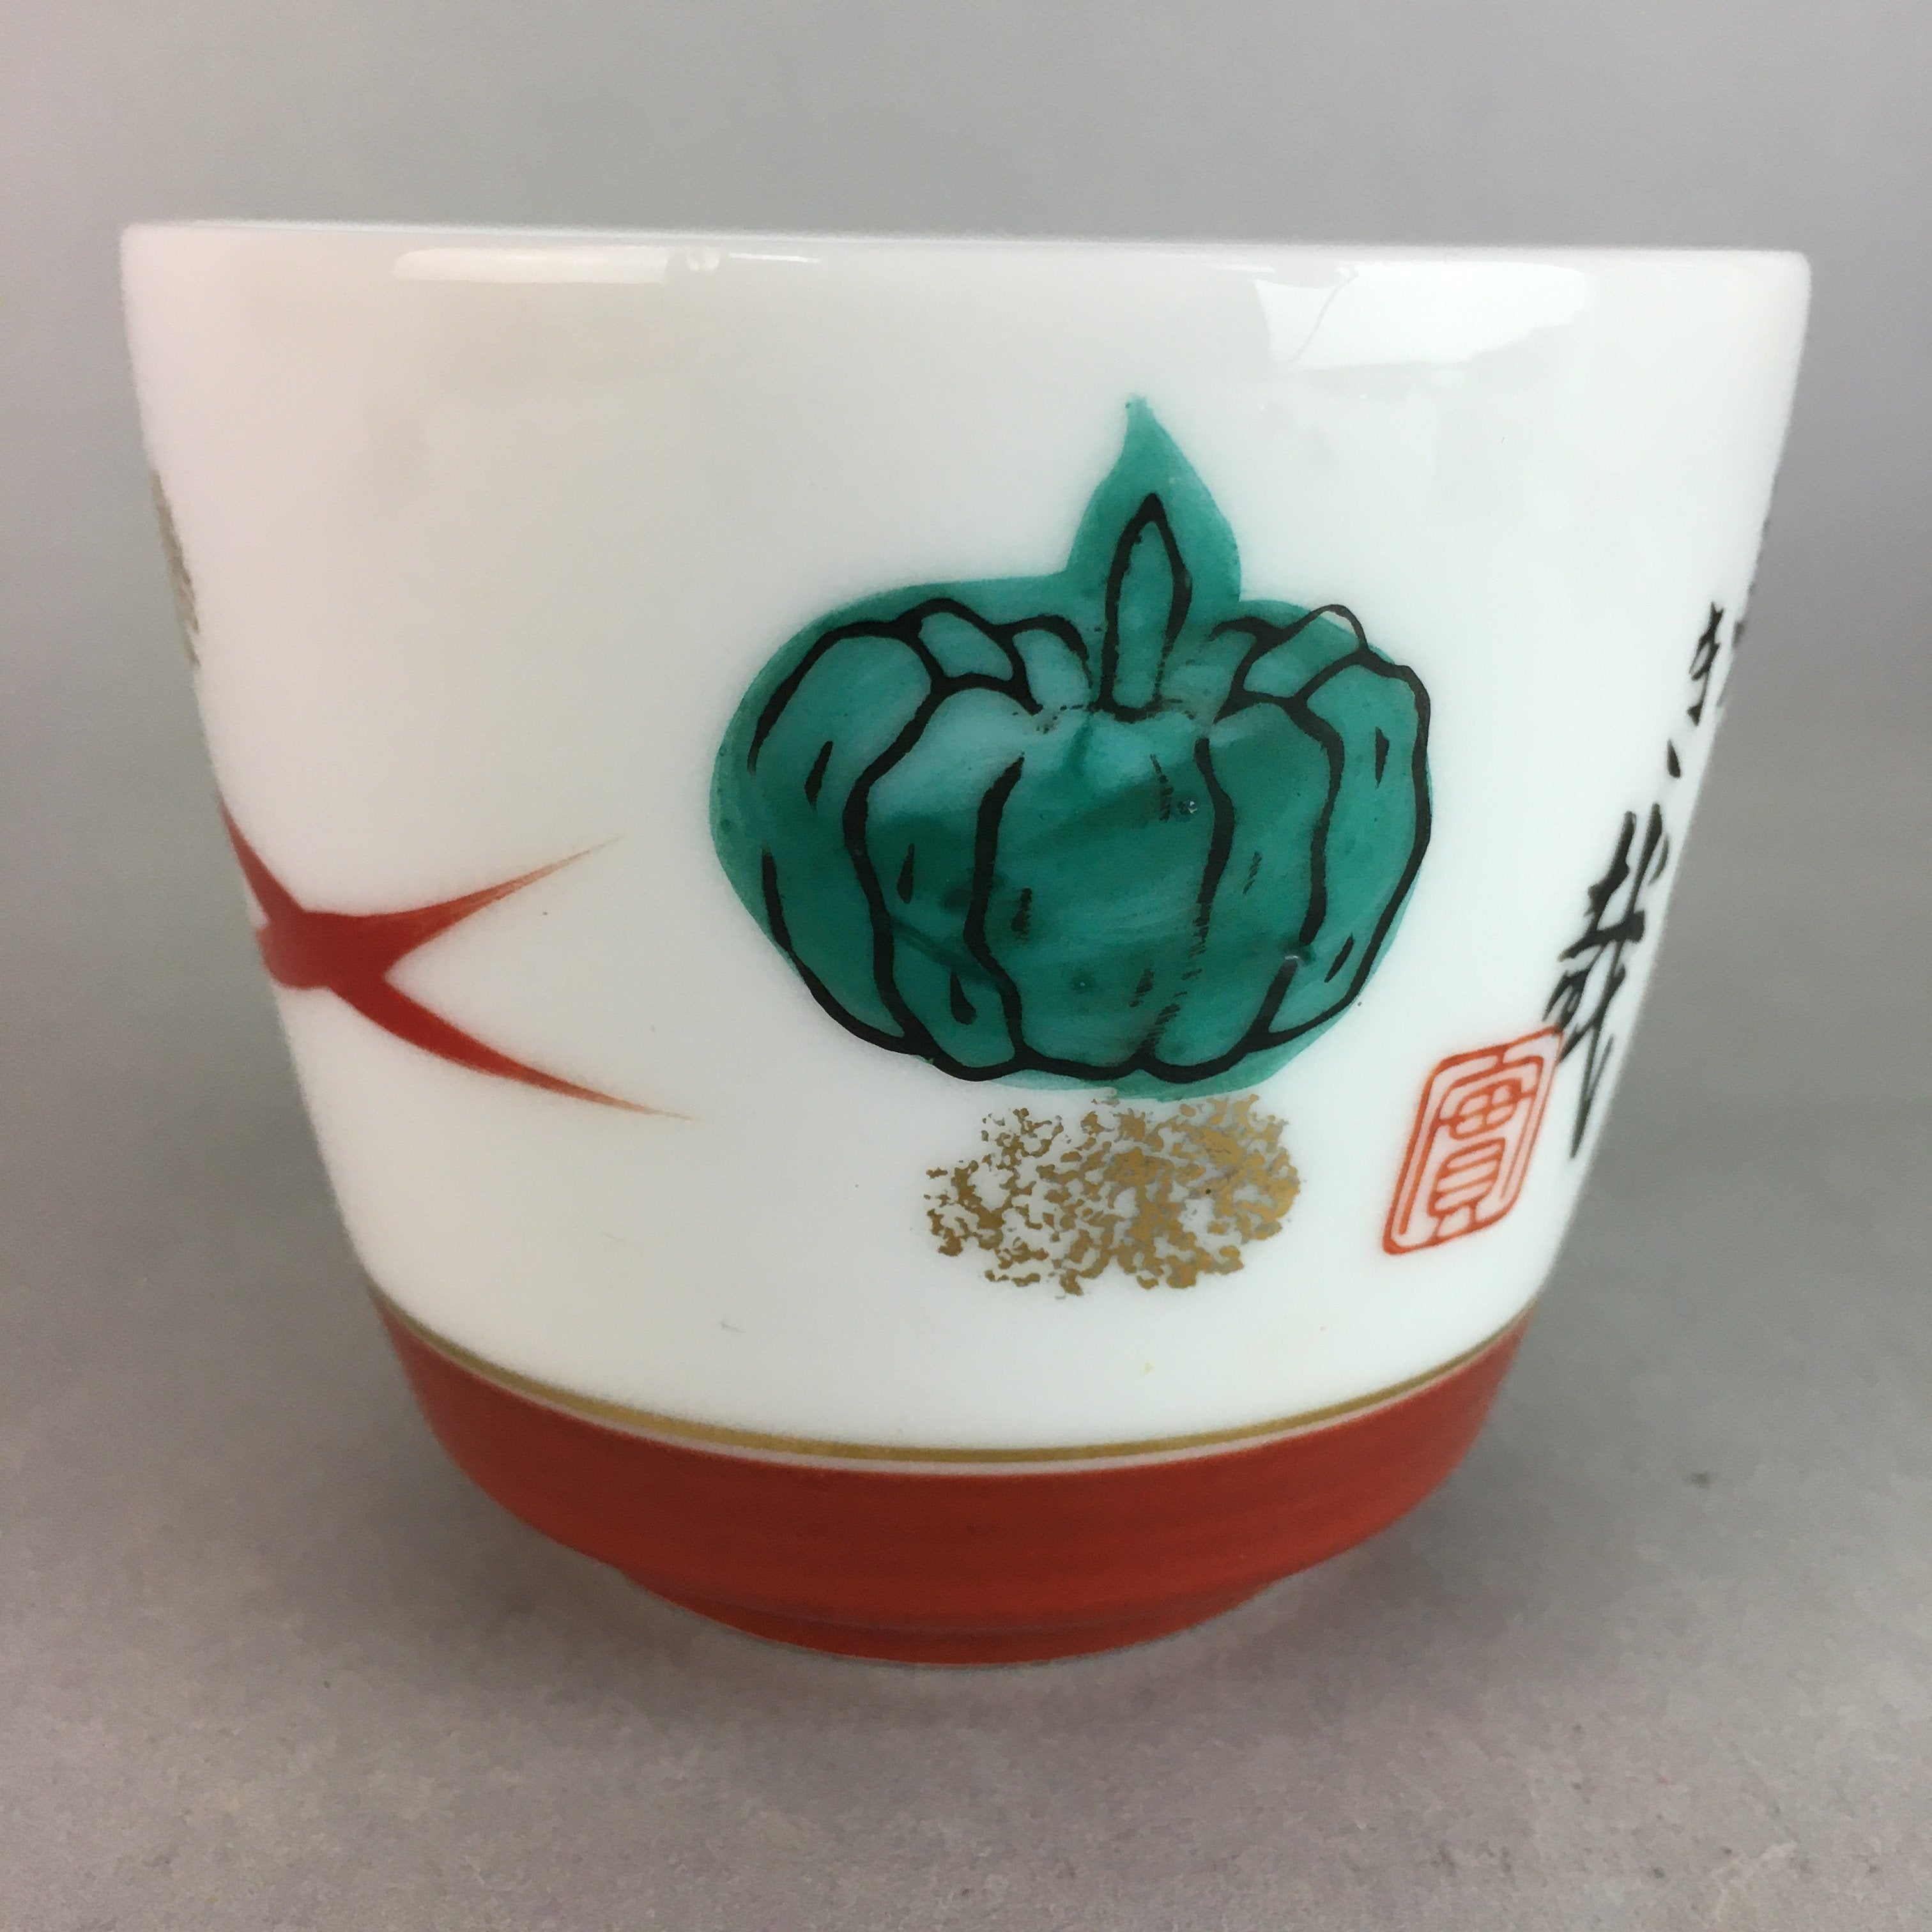 Japanese Porcelain Noodle Bowl Cup Vtg Soba Choko Word Kanji Vegetable PP290